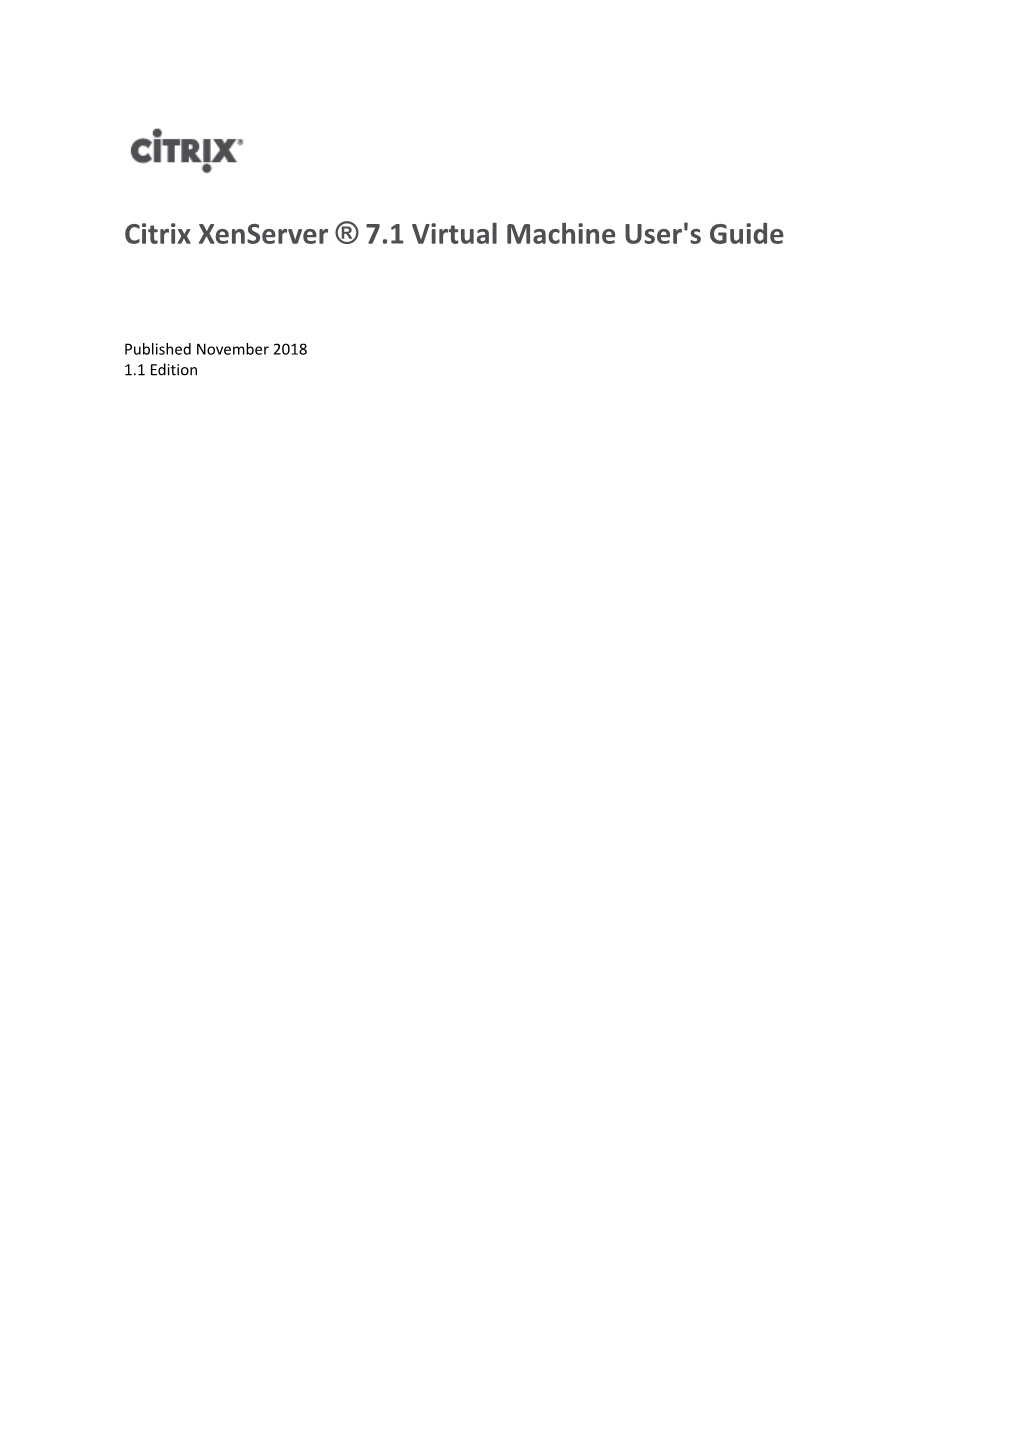 Xenserver 7.1 Virtual Machine User's Guide